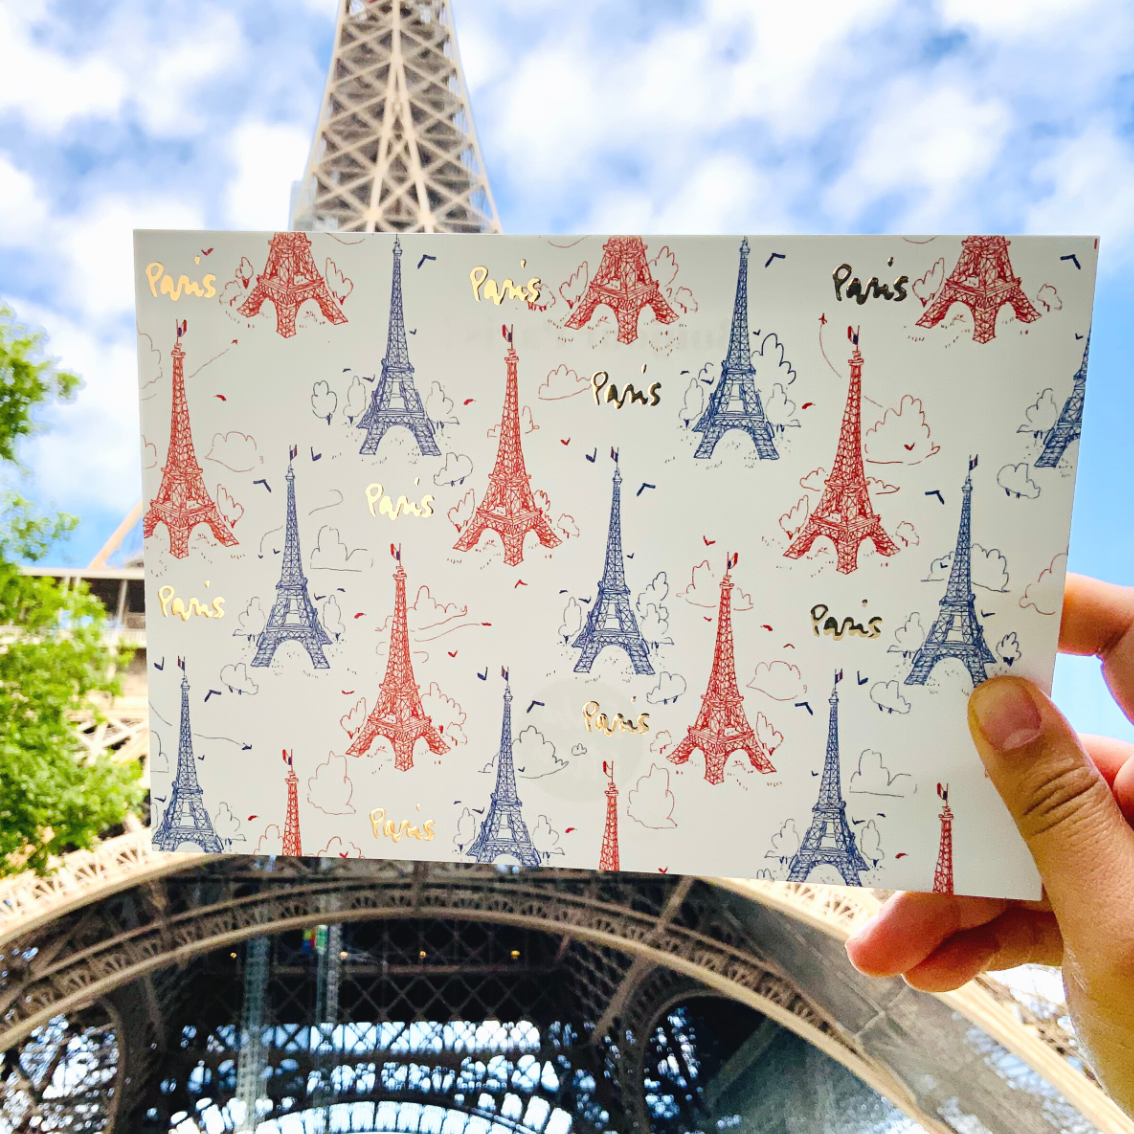 Tour Eiffel Tricolore